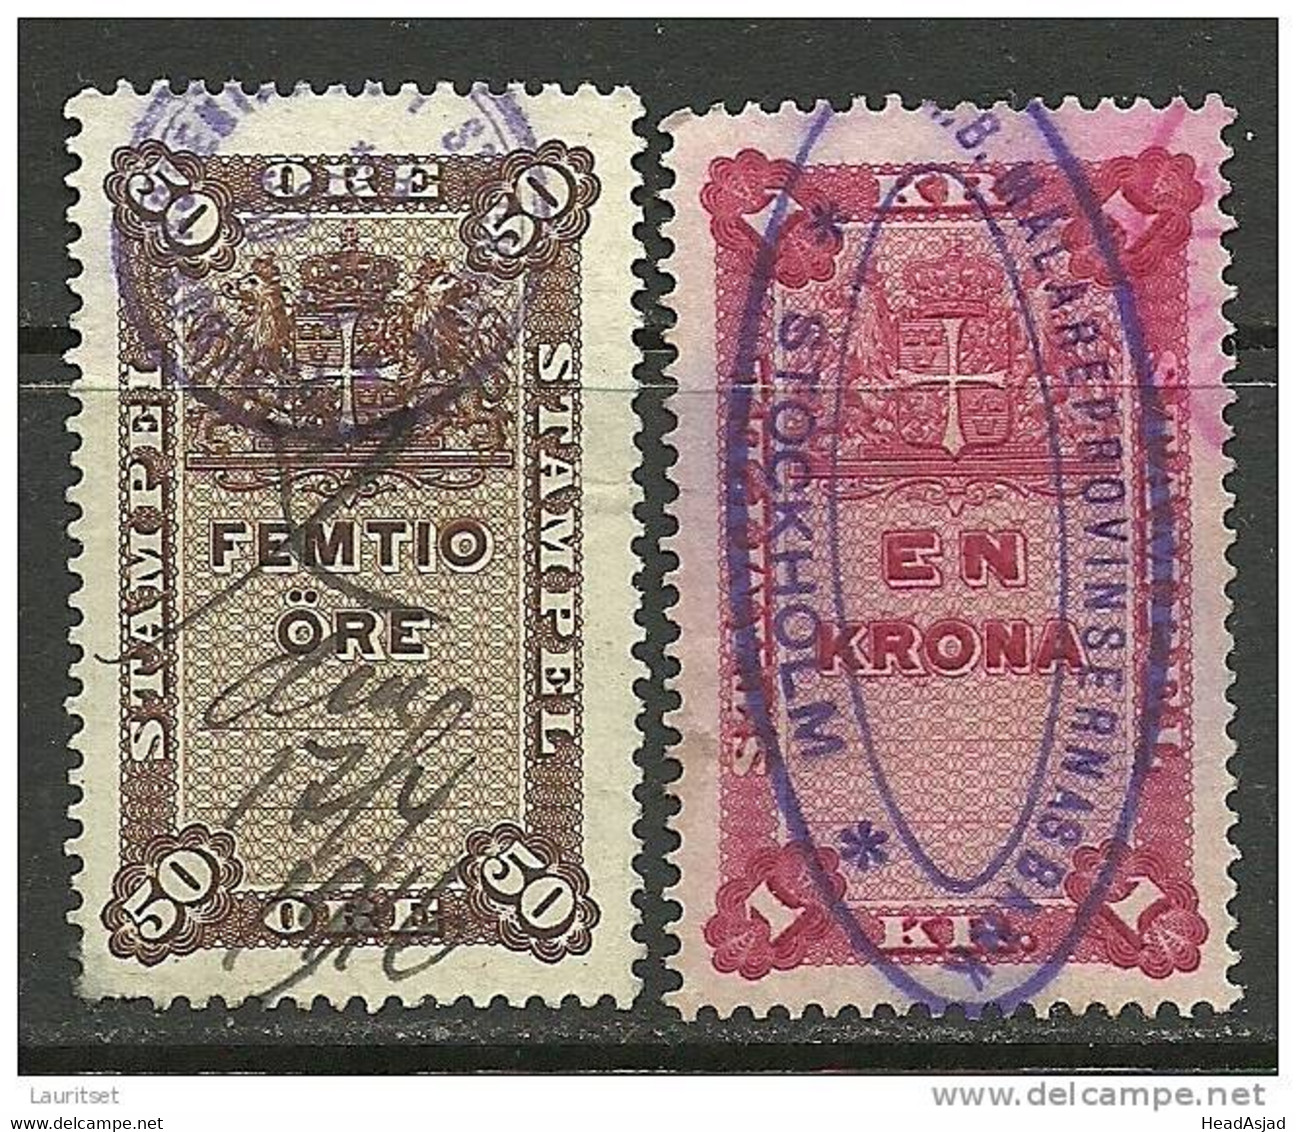 SCHWEDEN Sverige Sweden Stempelmarken Revenue Tax Stamps 50 öre & En Krona 1915/1916 - Revenue Stamps